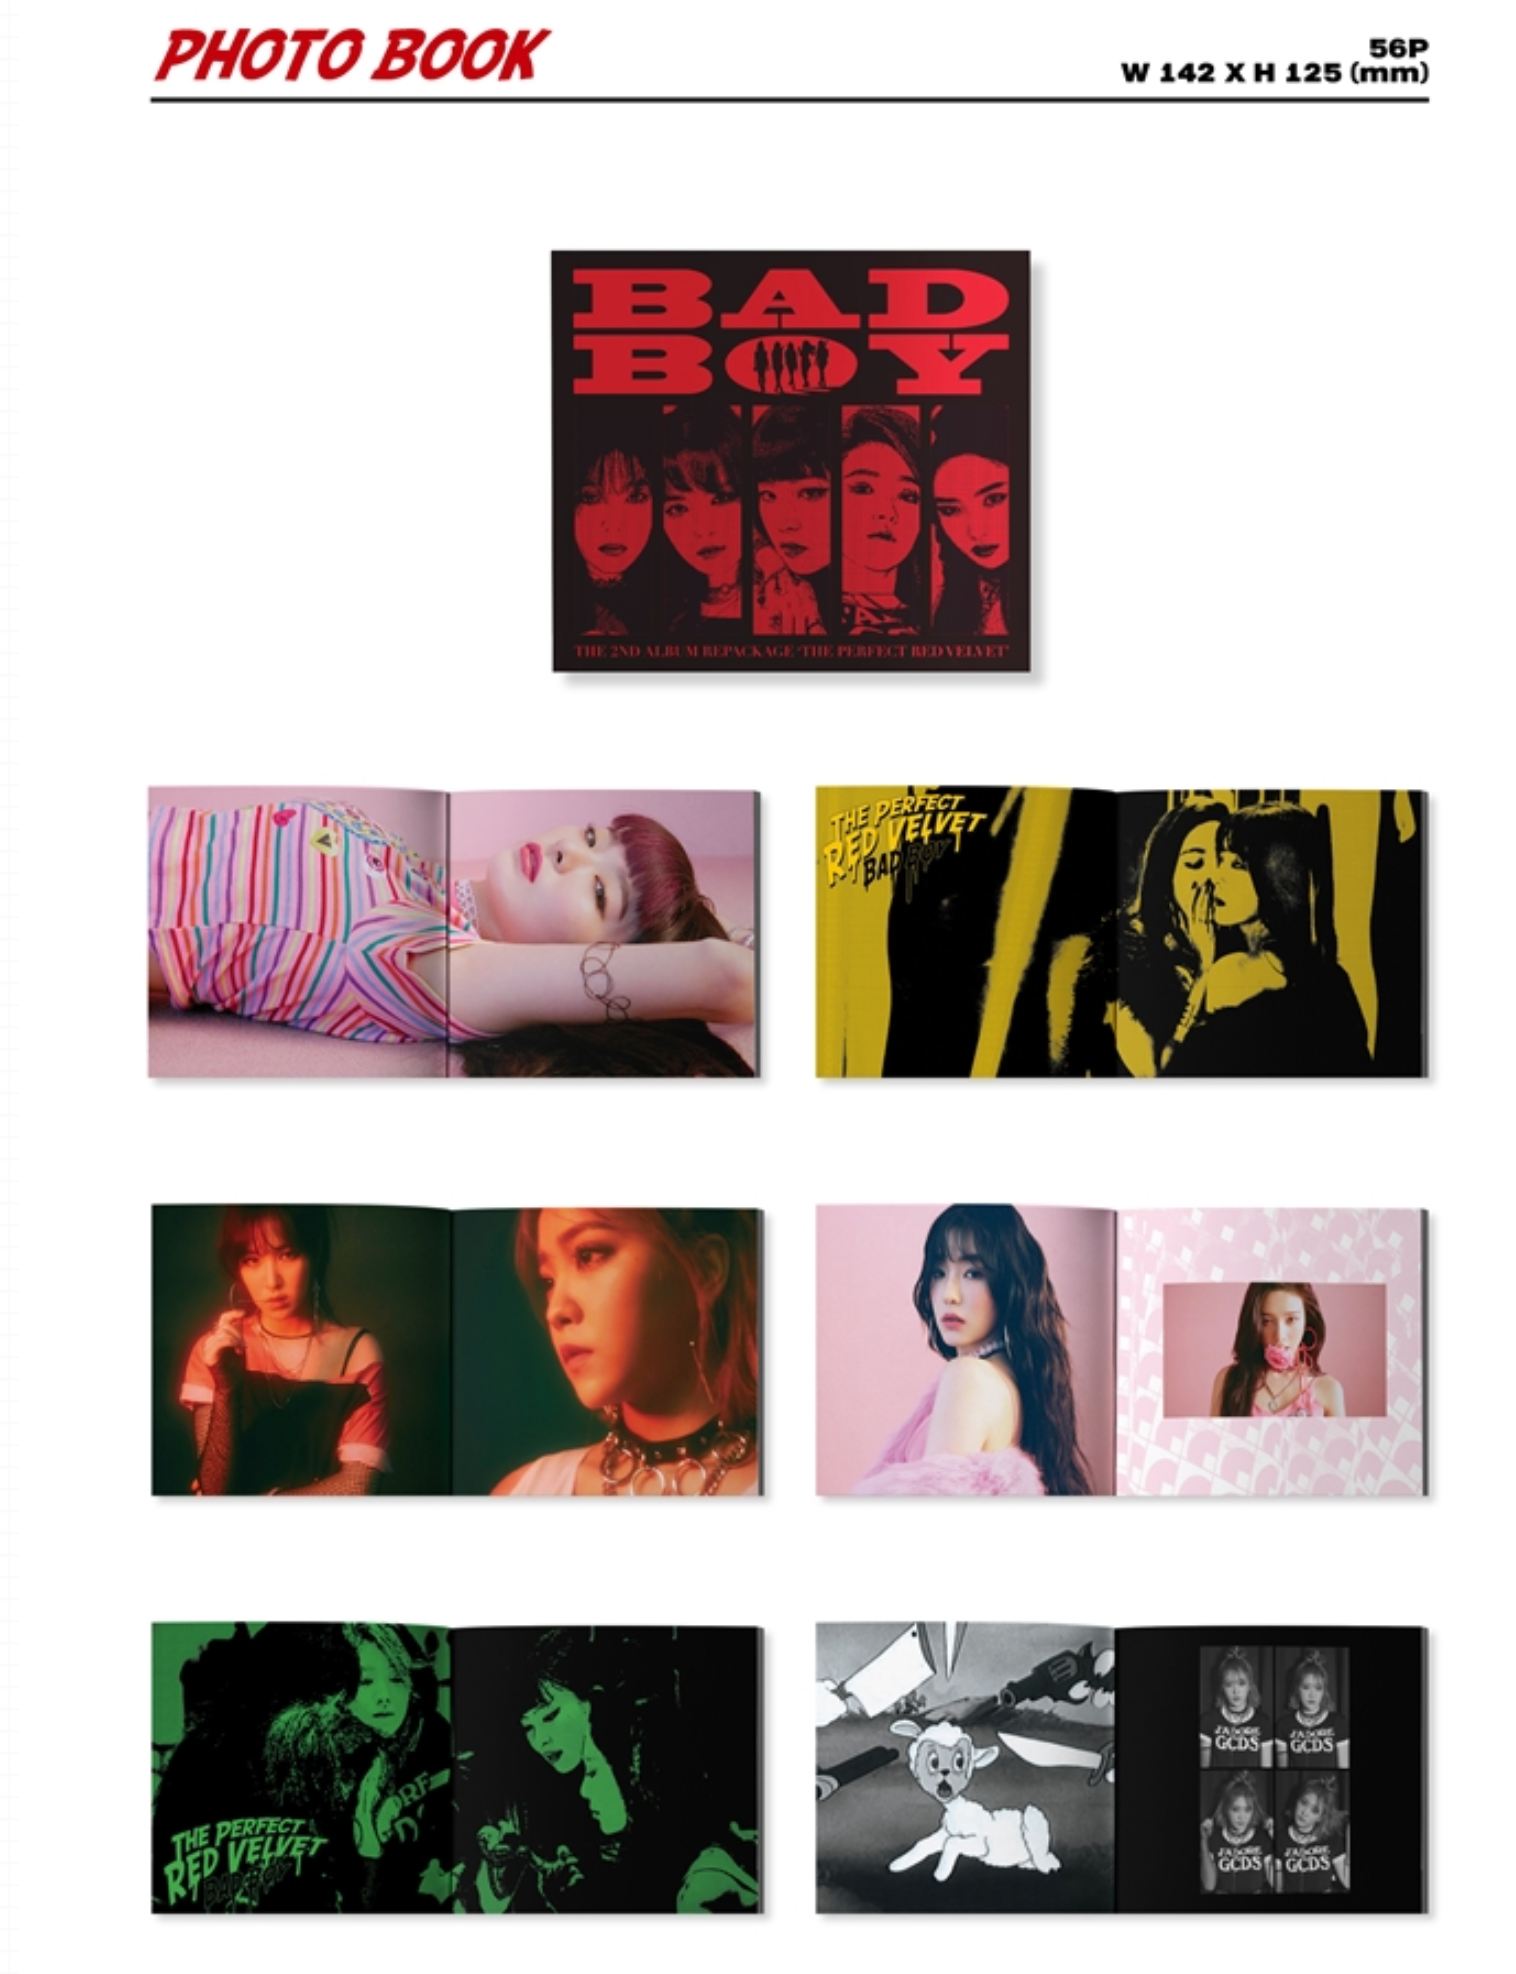 Red Velvet Vol.2 Repackage: The Perfect Red Velvet